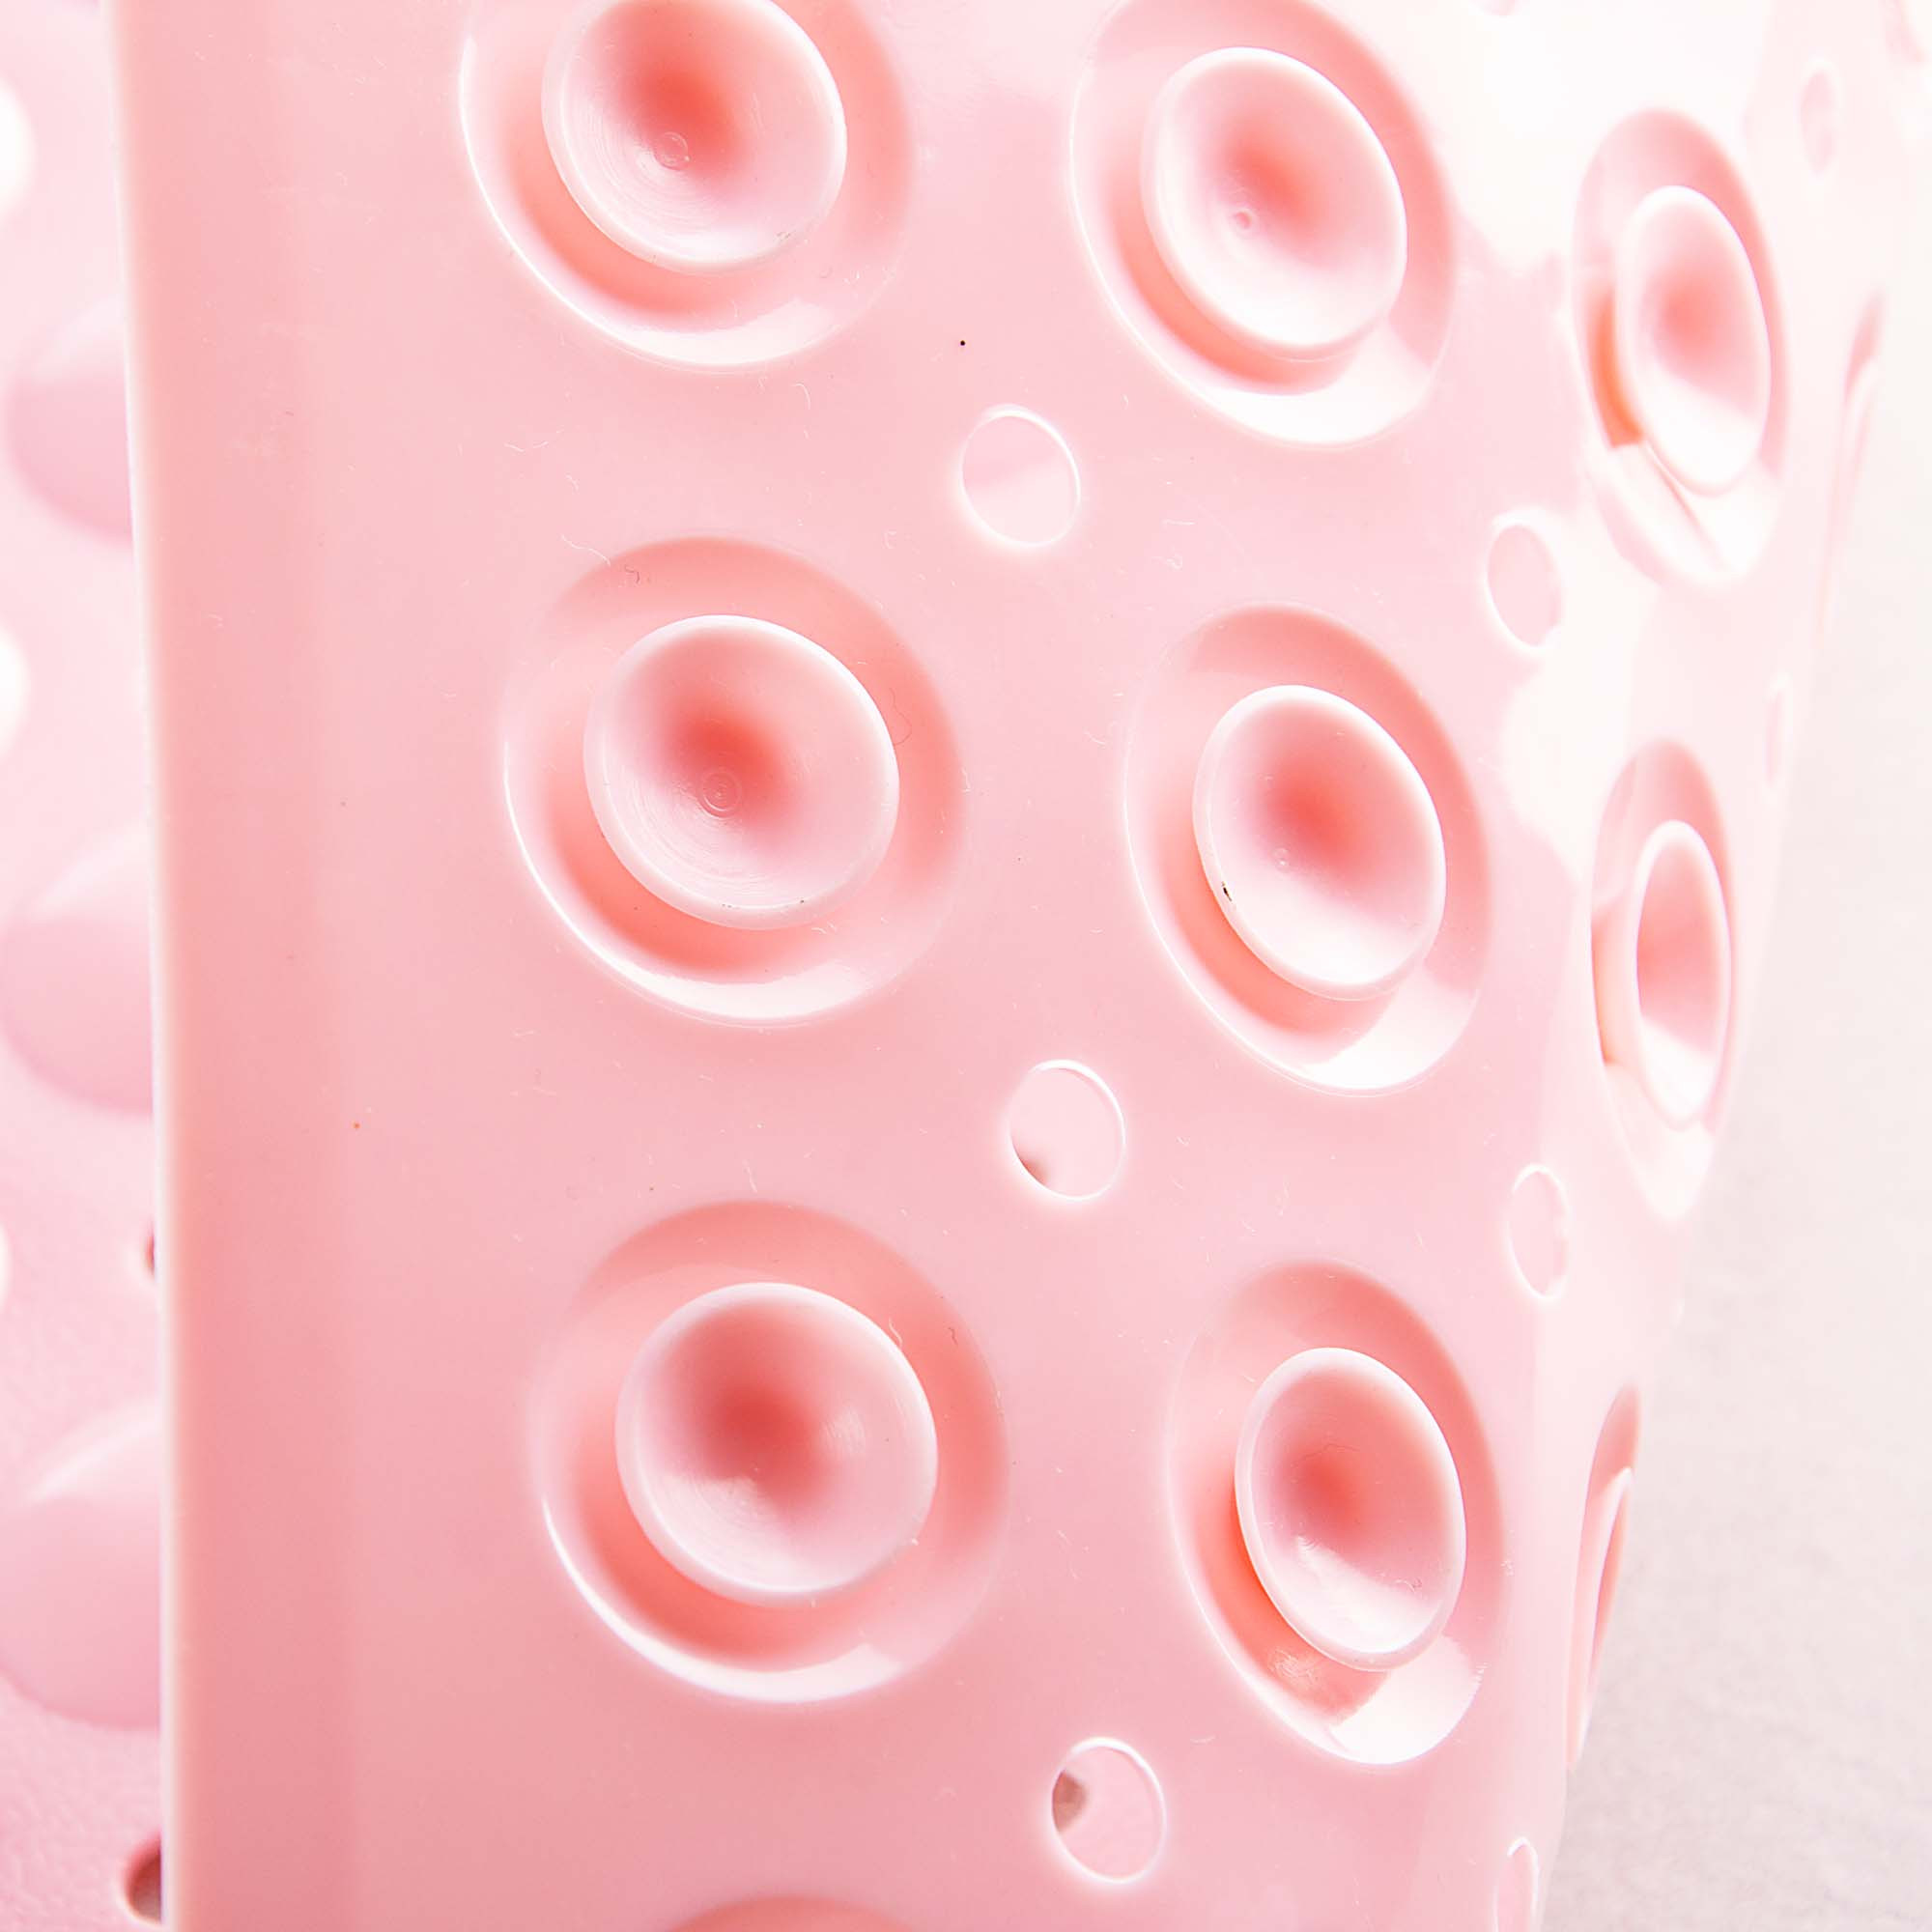 Alfombra con antideslizante para ducha Novo elaborada en plástico.